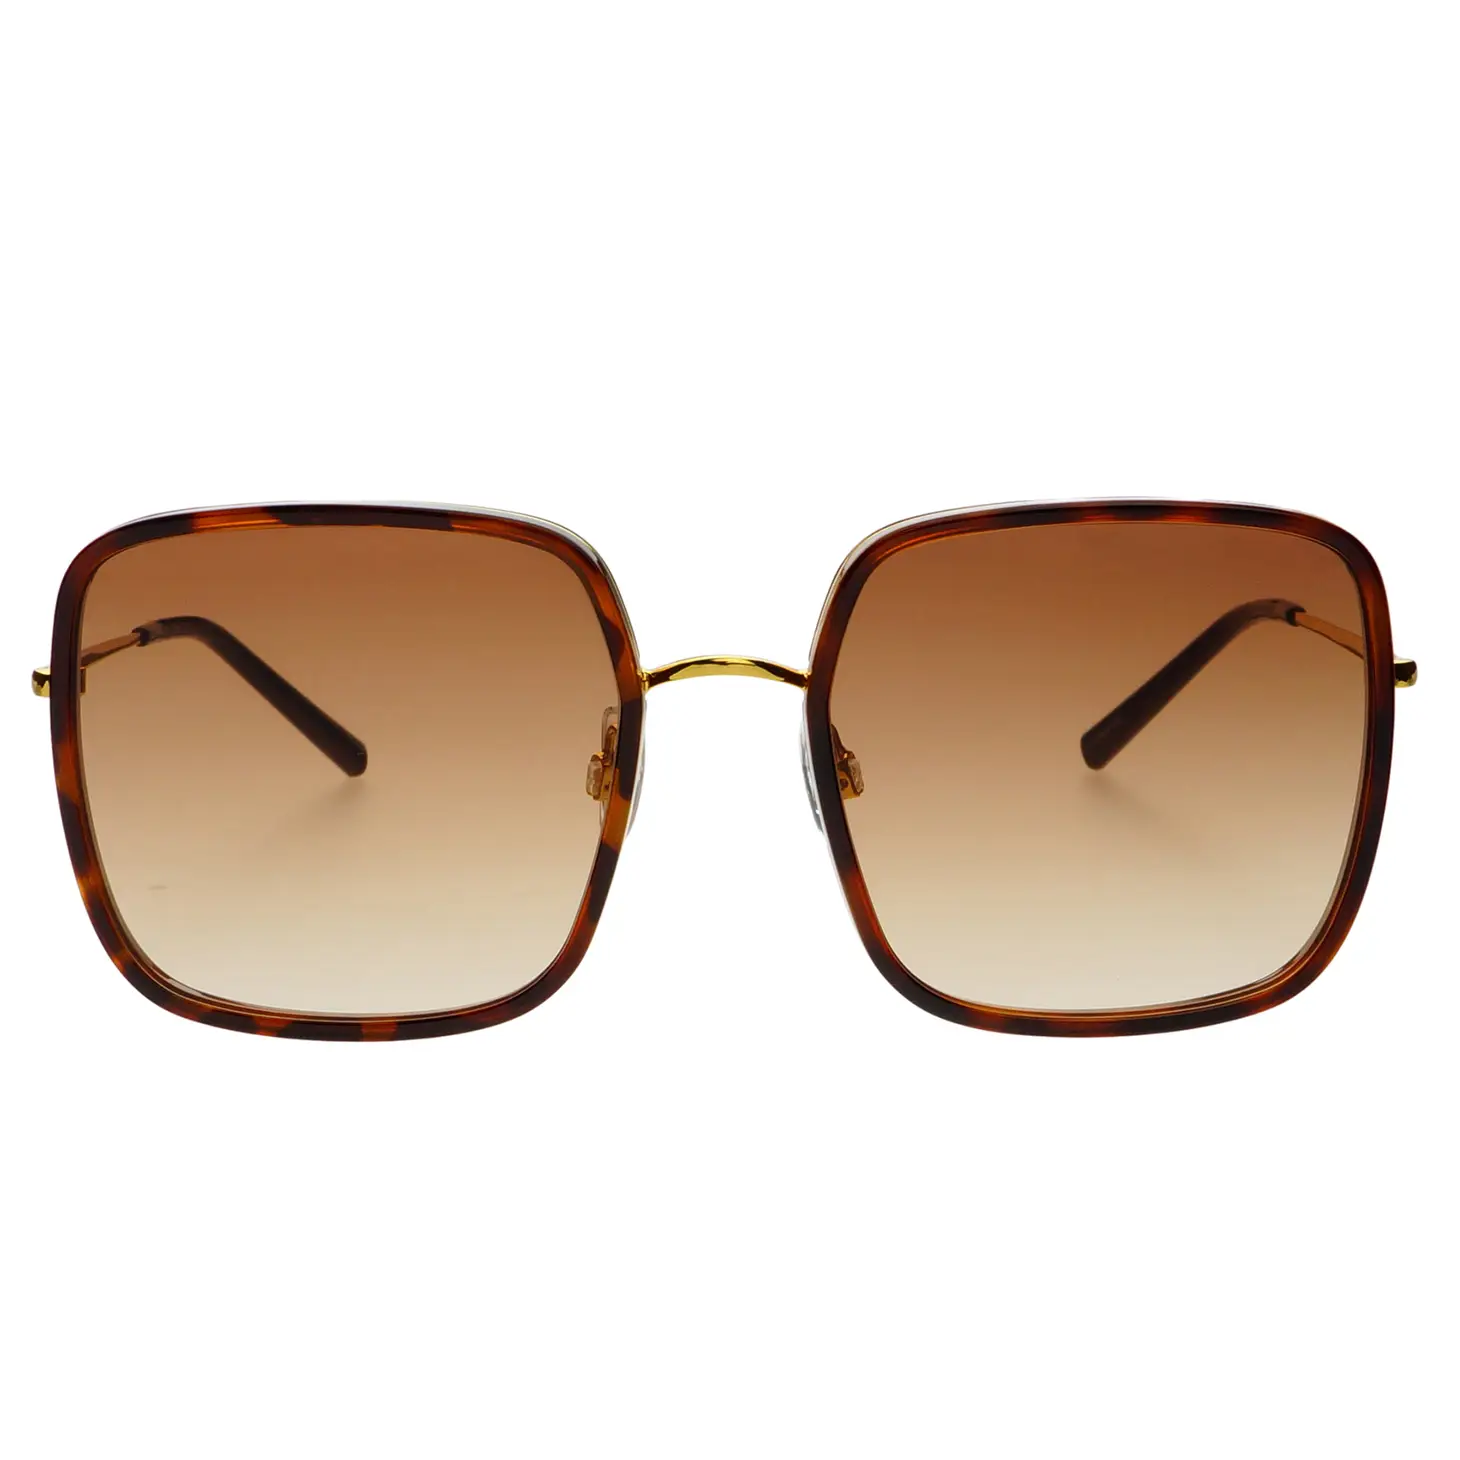 Sunglasses, Cosmo - Danshire Market and Design 